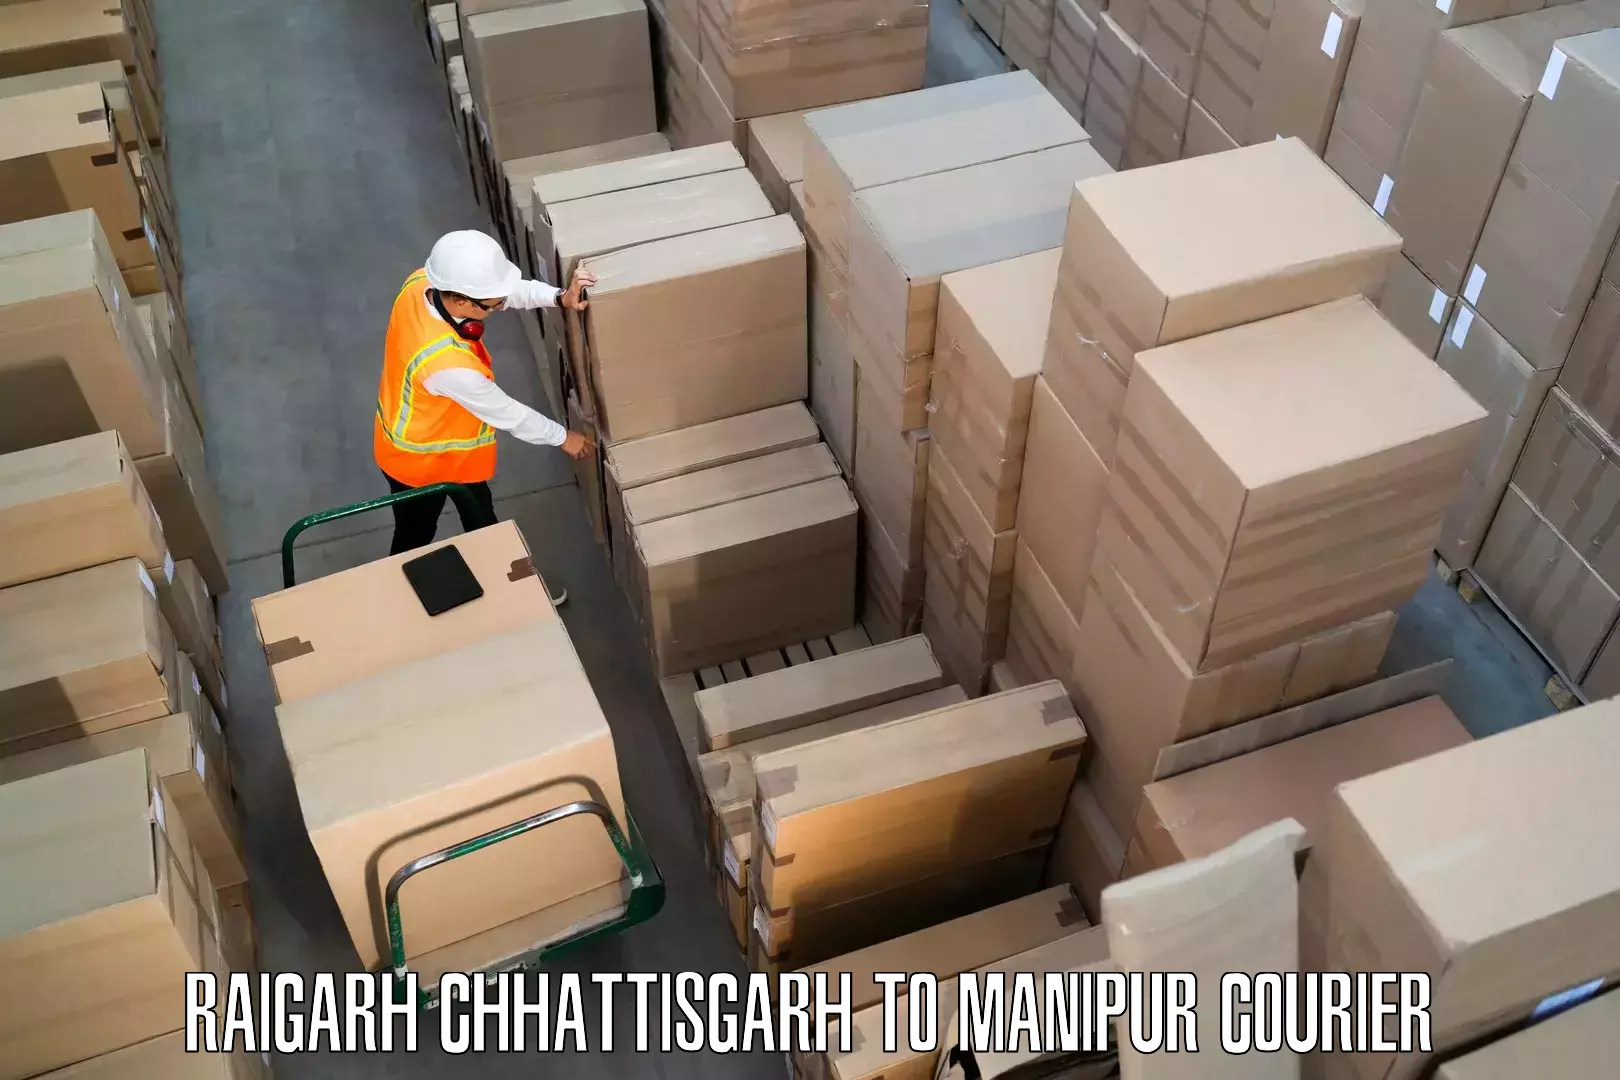 Comprehensive relocation services Raigarh Chhattisgarh to Chandel